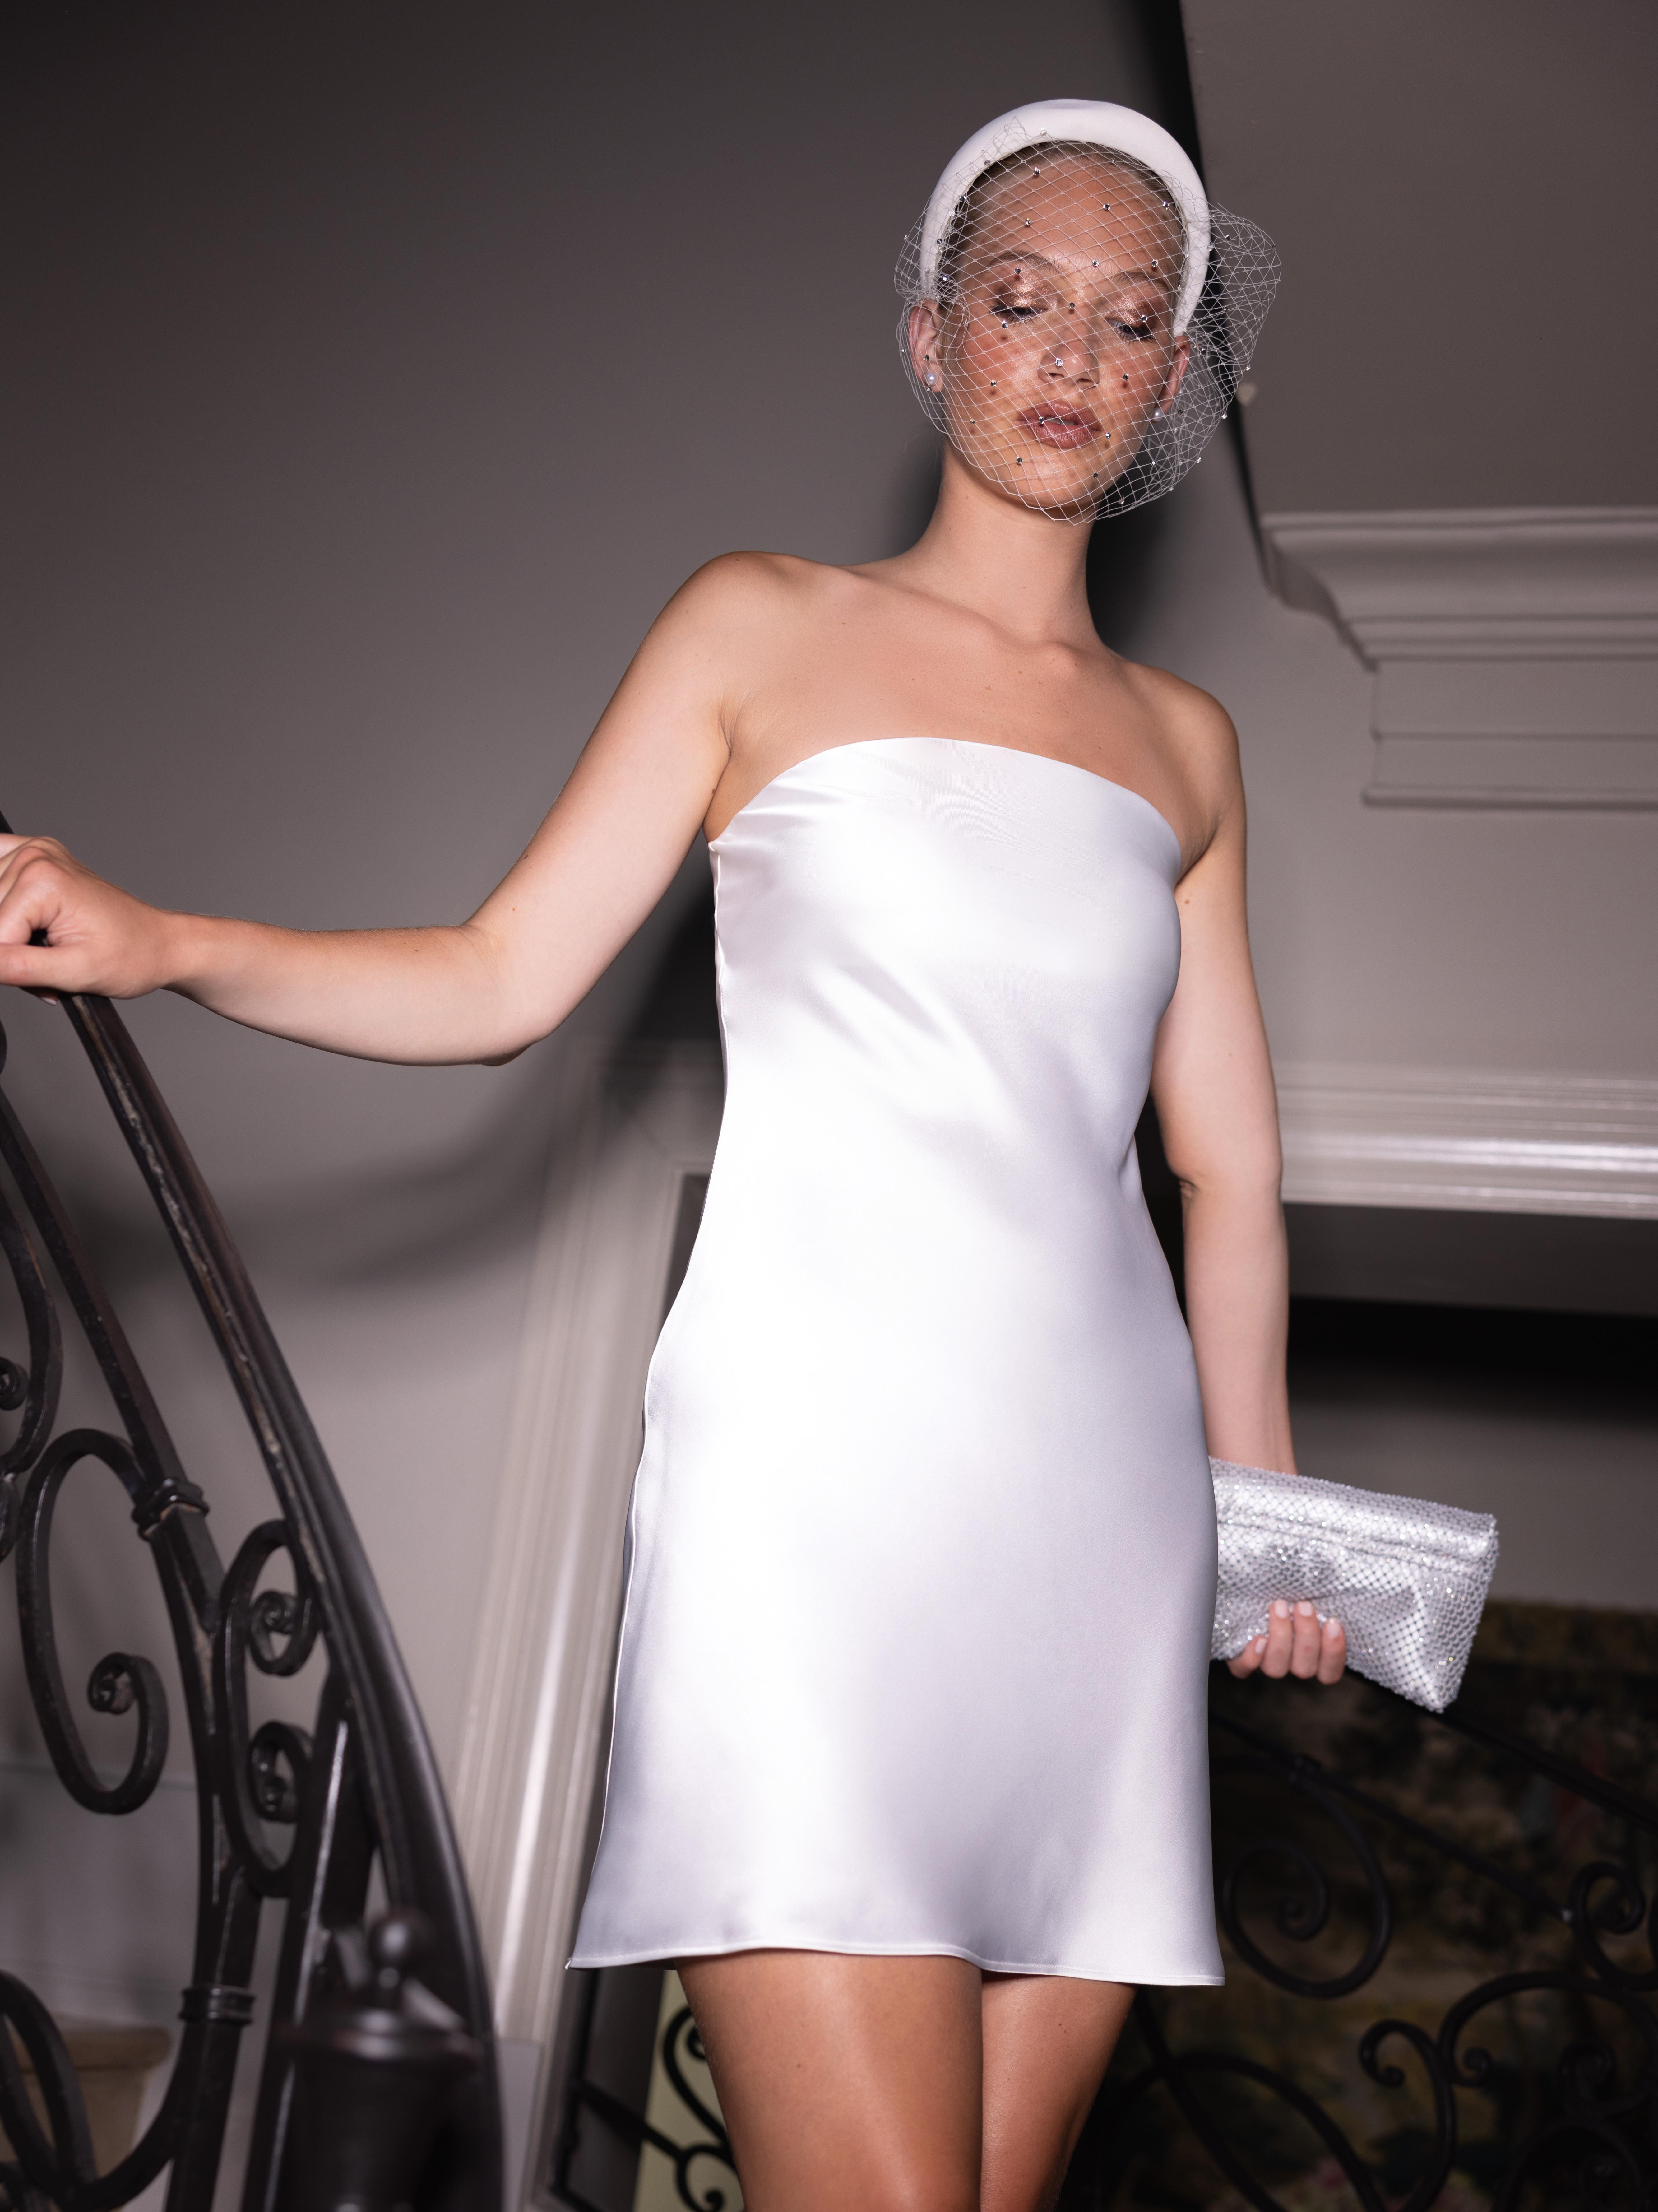 Primark verkauft auch ein Brautkleid "Hergestellt aus elfenbeinweißem Satin mit einer glatten und glänzenden Oberfläche" für 20 £